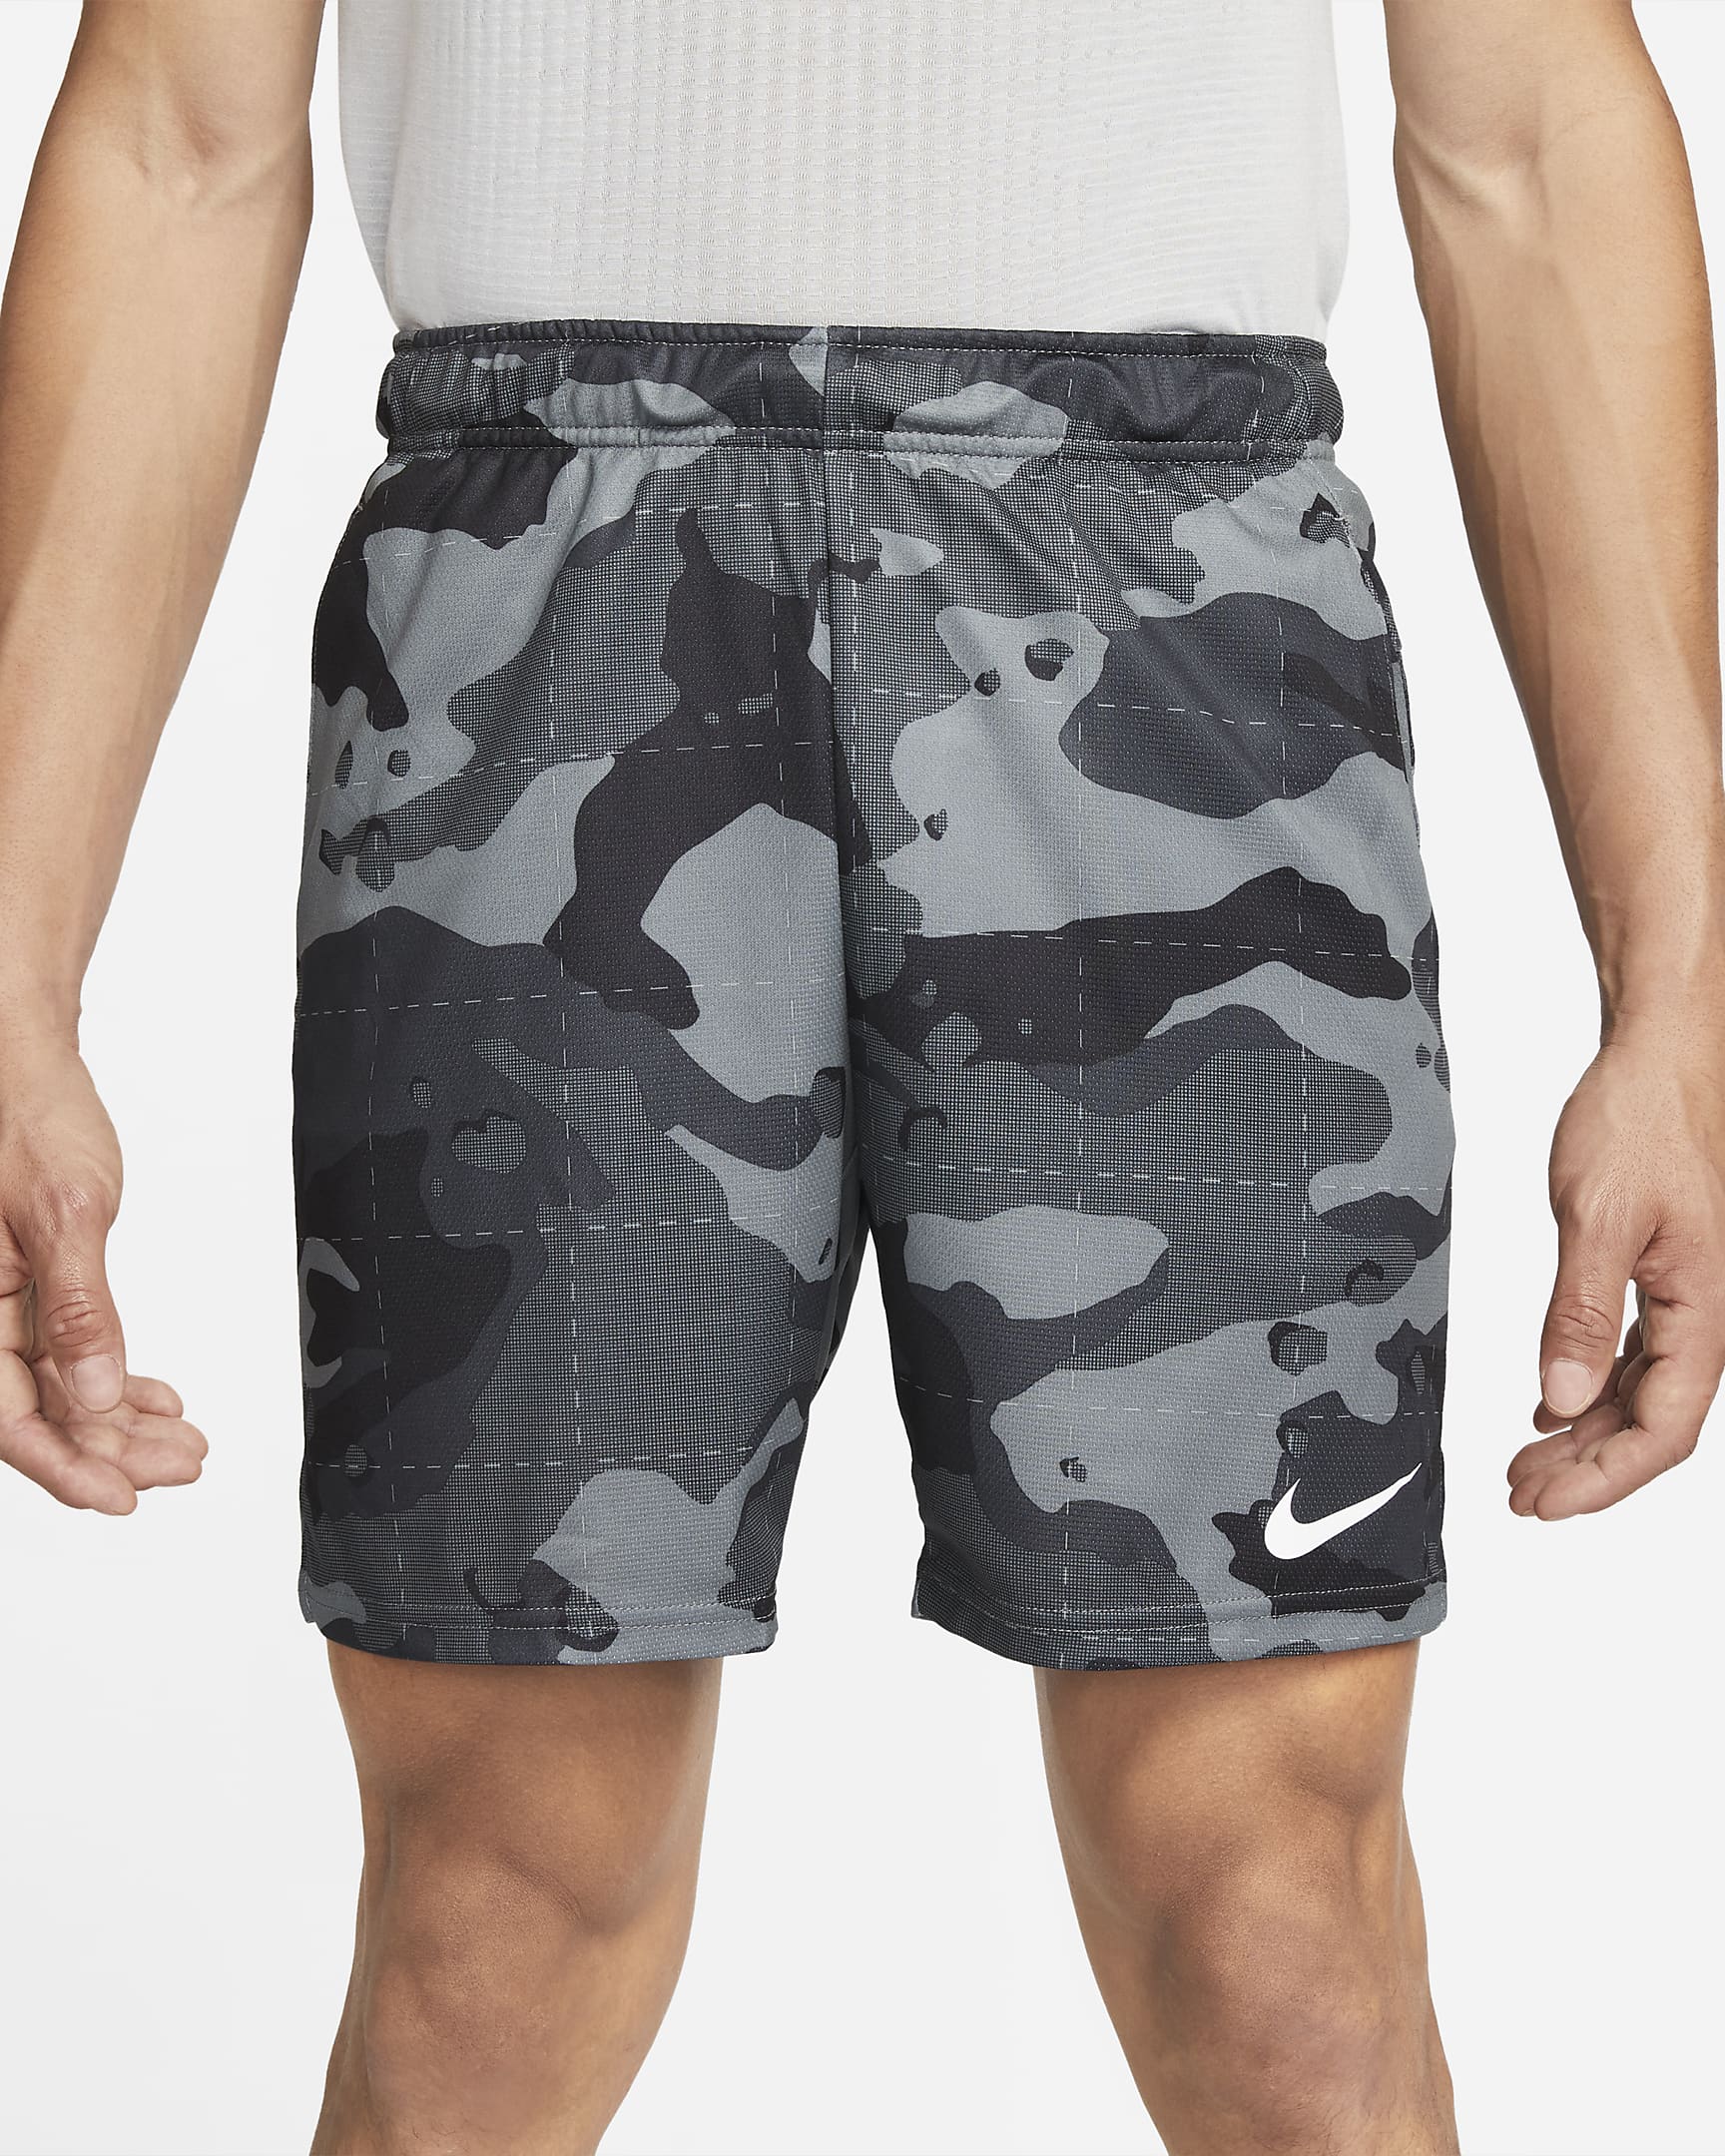 Nike Dri-FIT Men's Camo Training Shorts. Nike PH